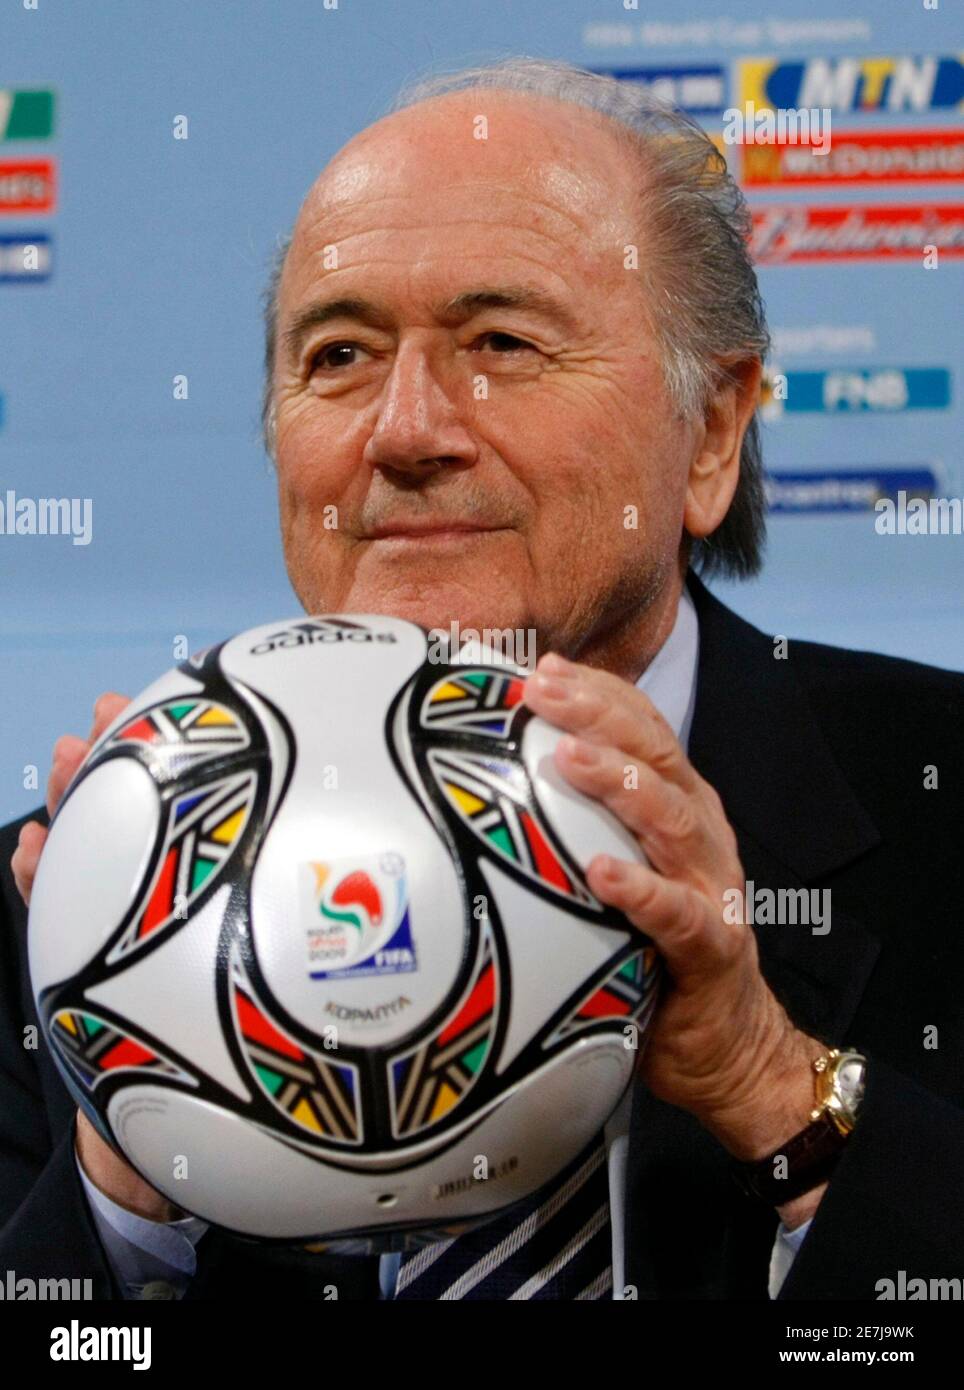 Sepp Blatter, presidente de la FIFA, celebra el balón oficial de la Copa Confederaciones de la FIFA 2009 durante una rueda de prensa sobre el progreso para la Copa